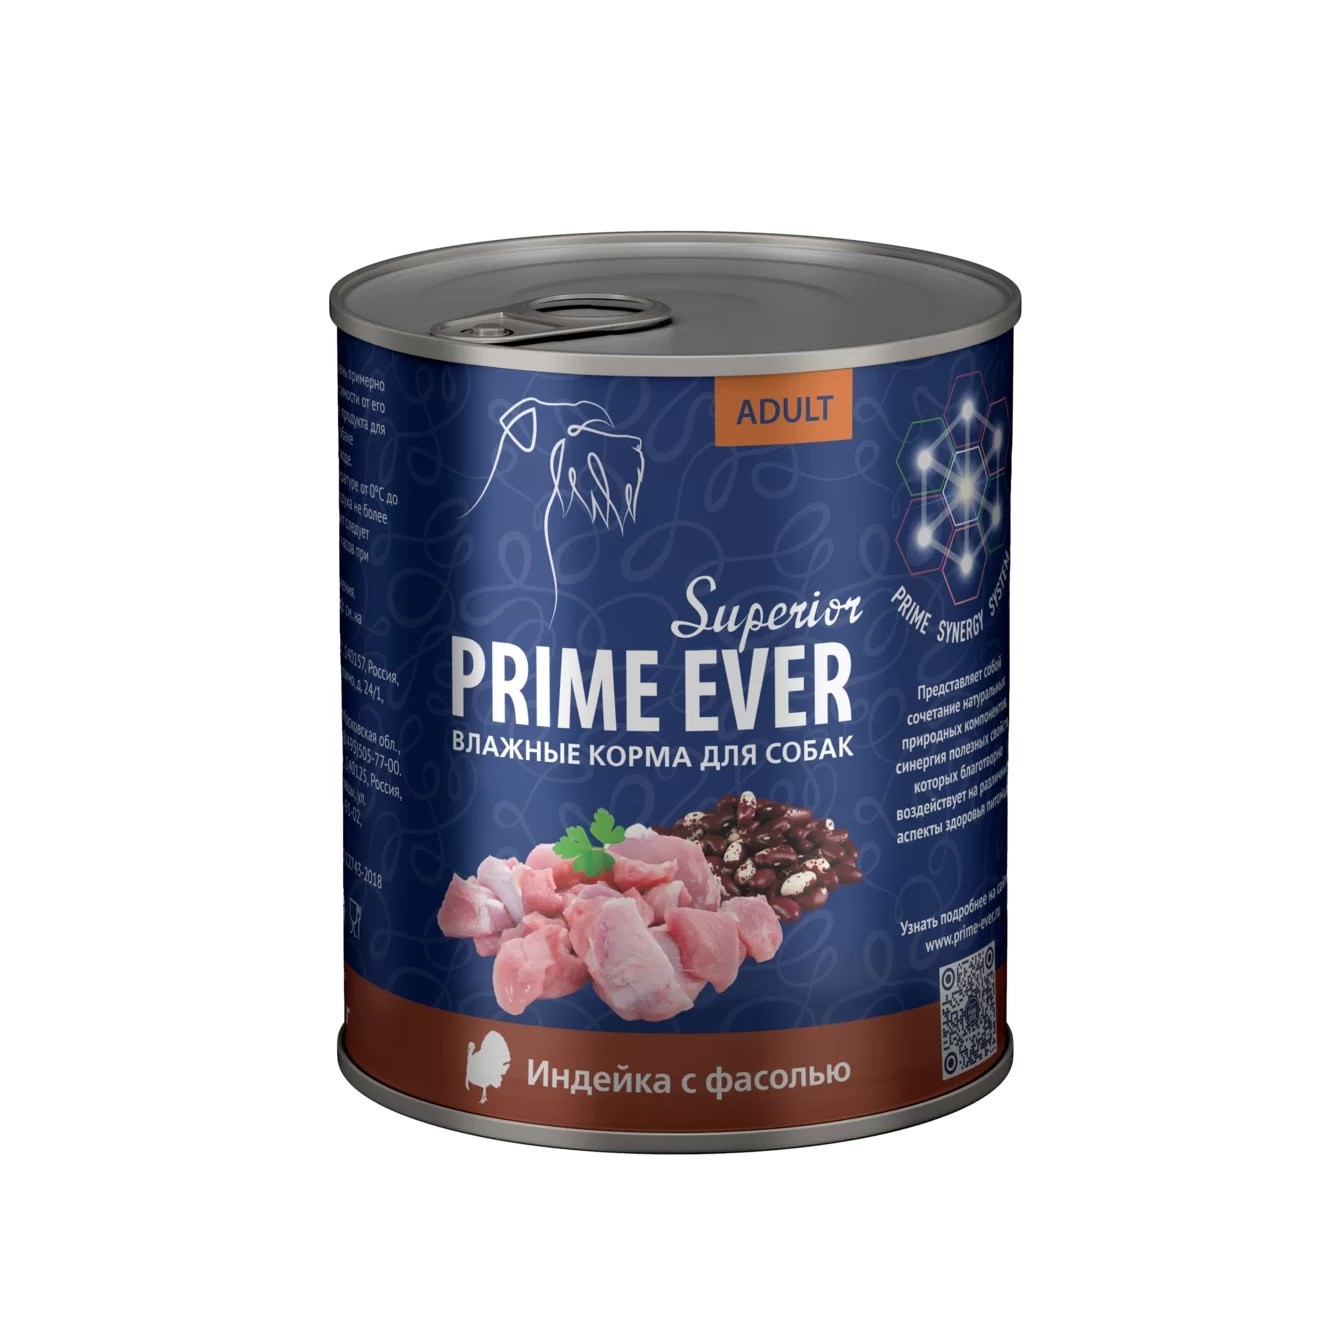 Prime Ever Superior Индейка/фасоль для собак 400 г 1